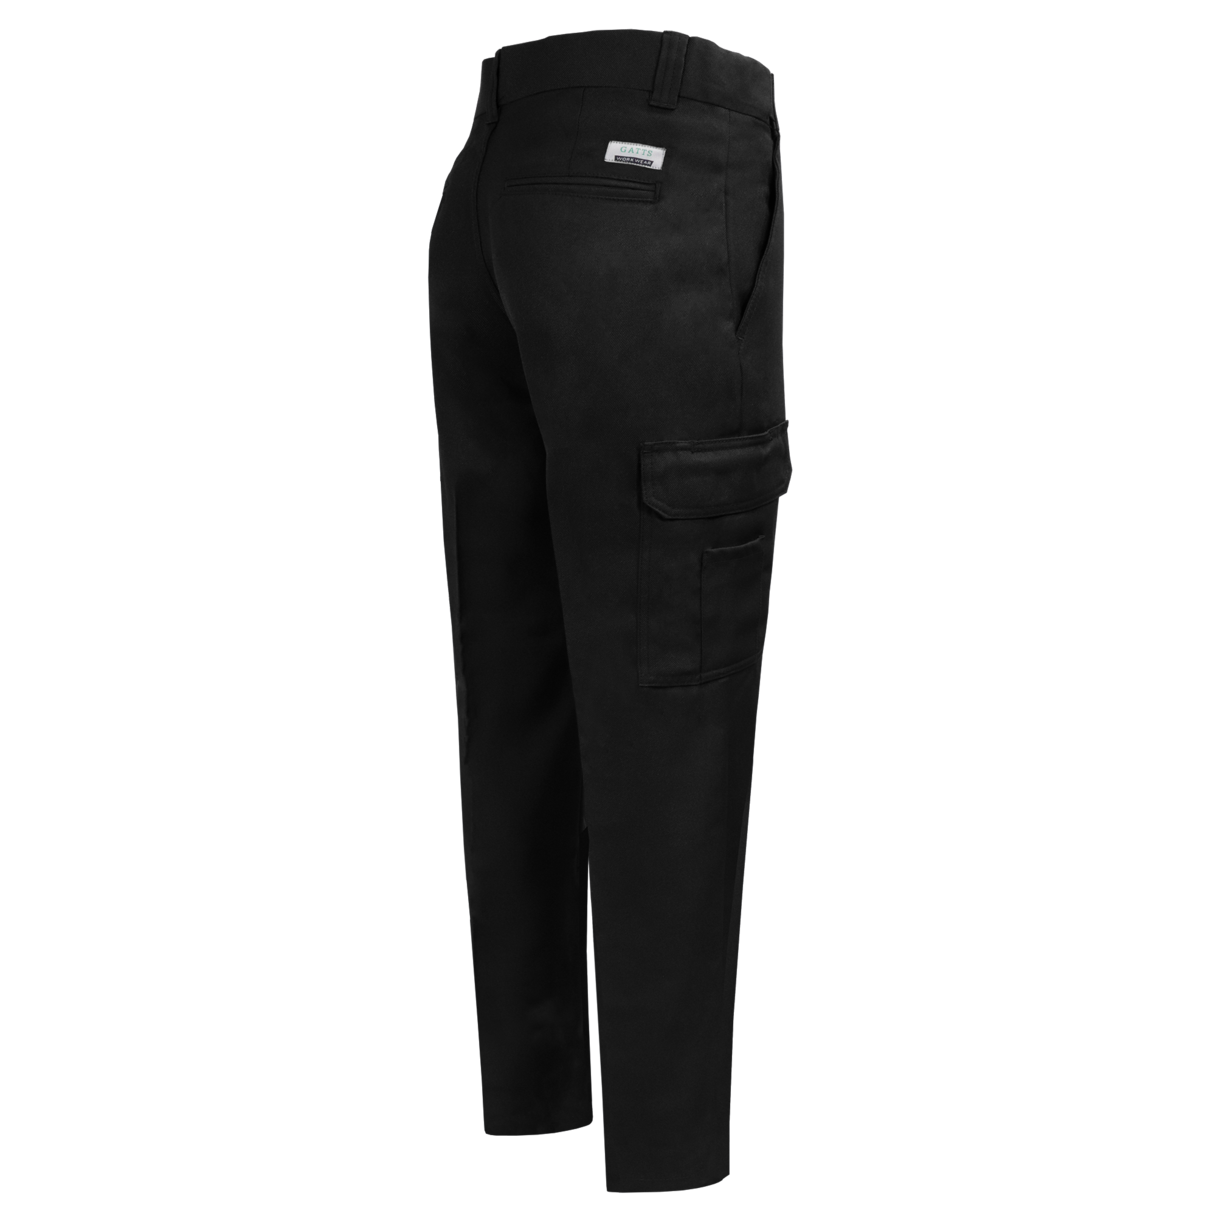 Pantalon de travail cargo Gatts #MG-011 noir dos